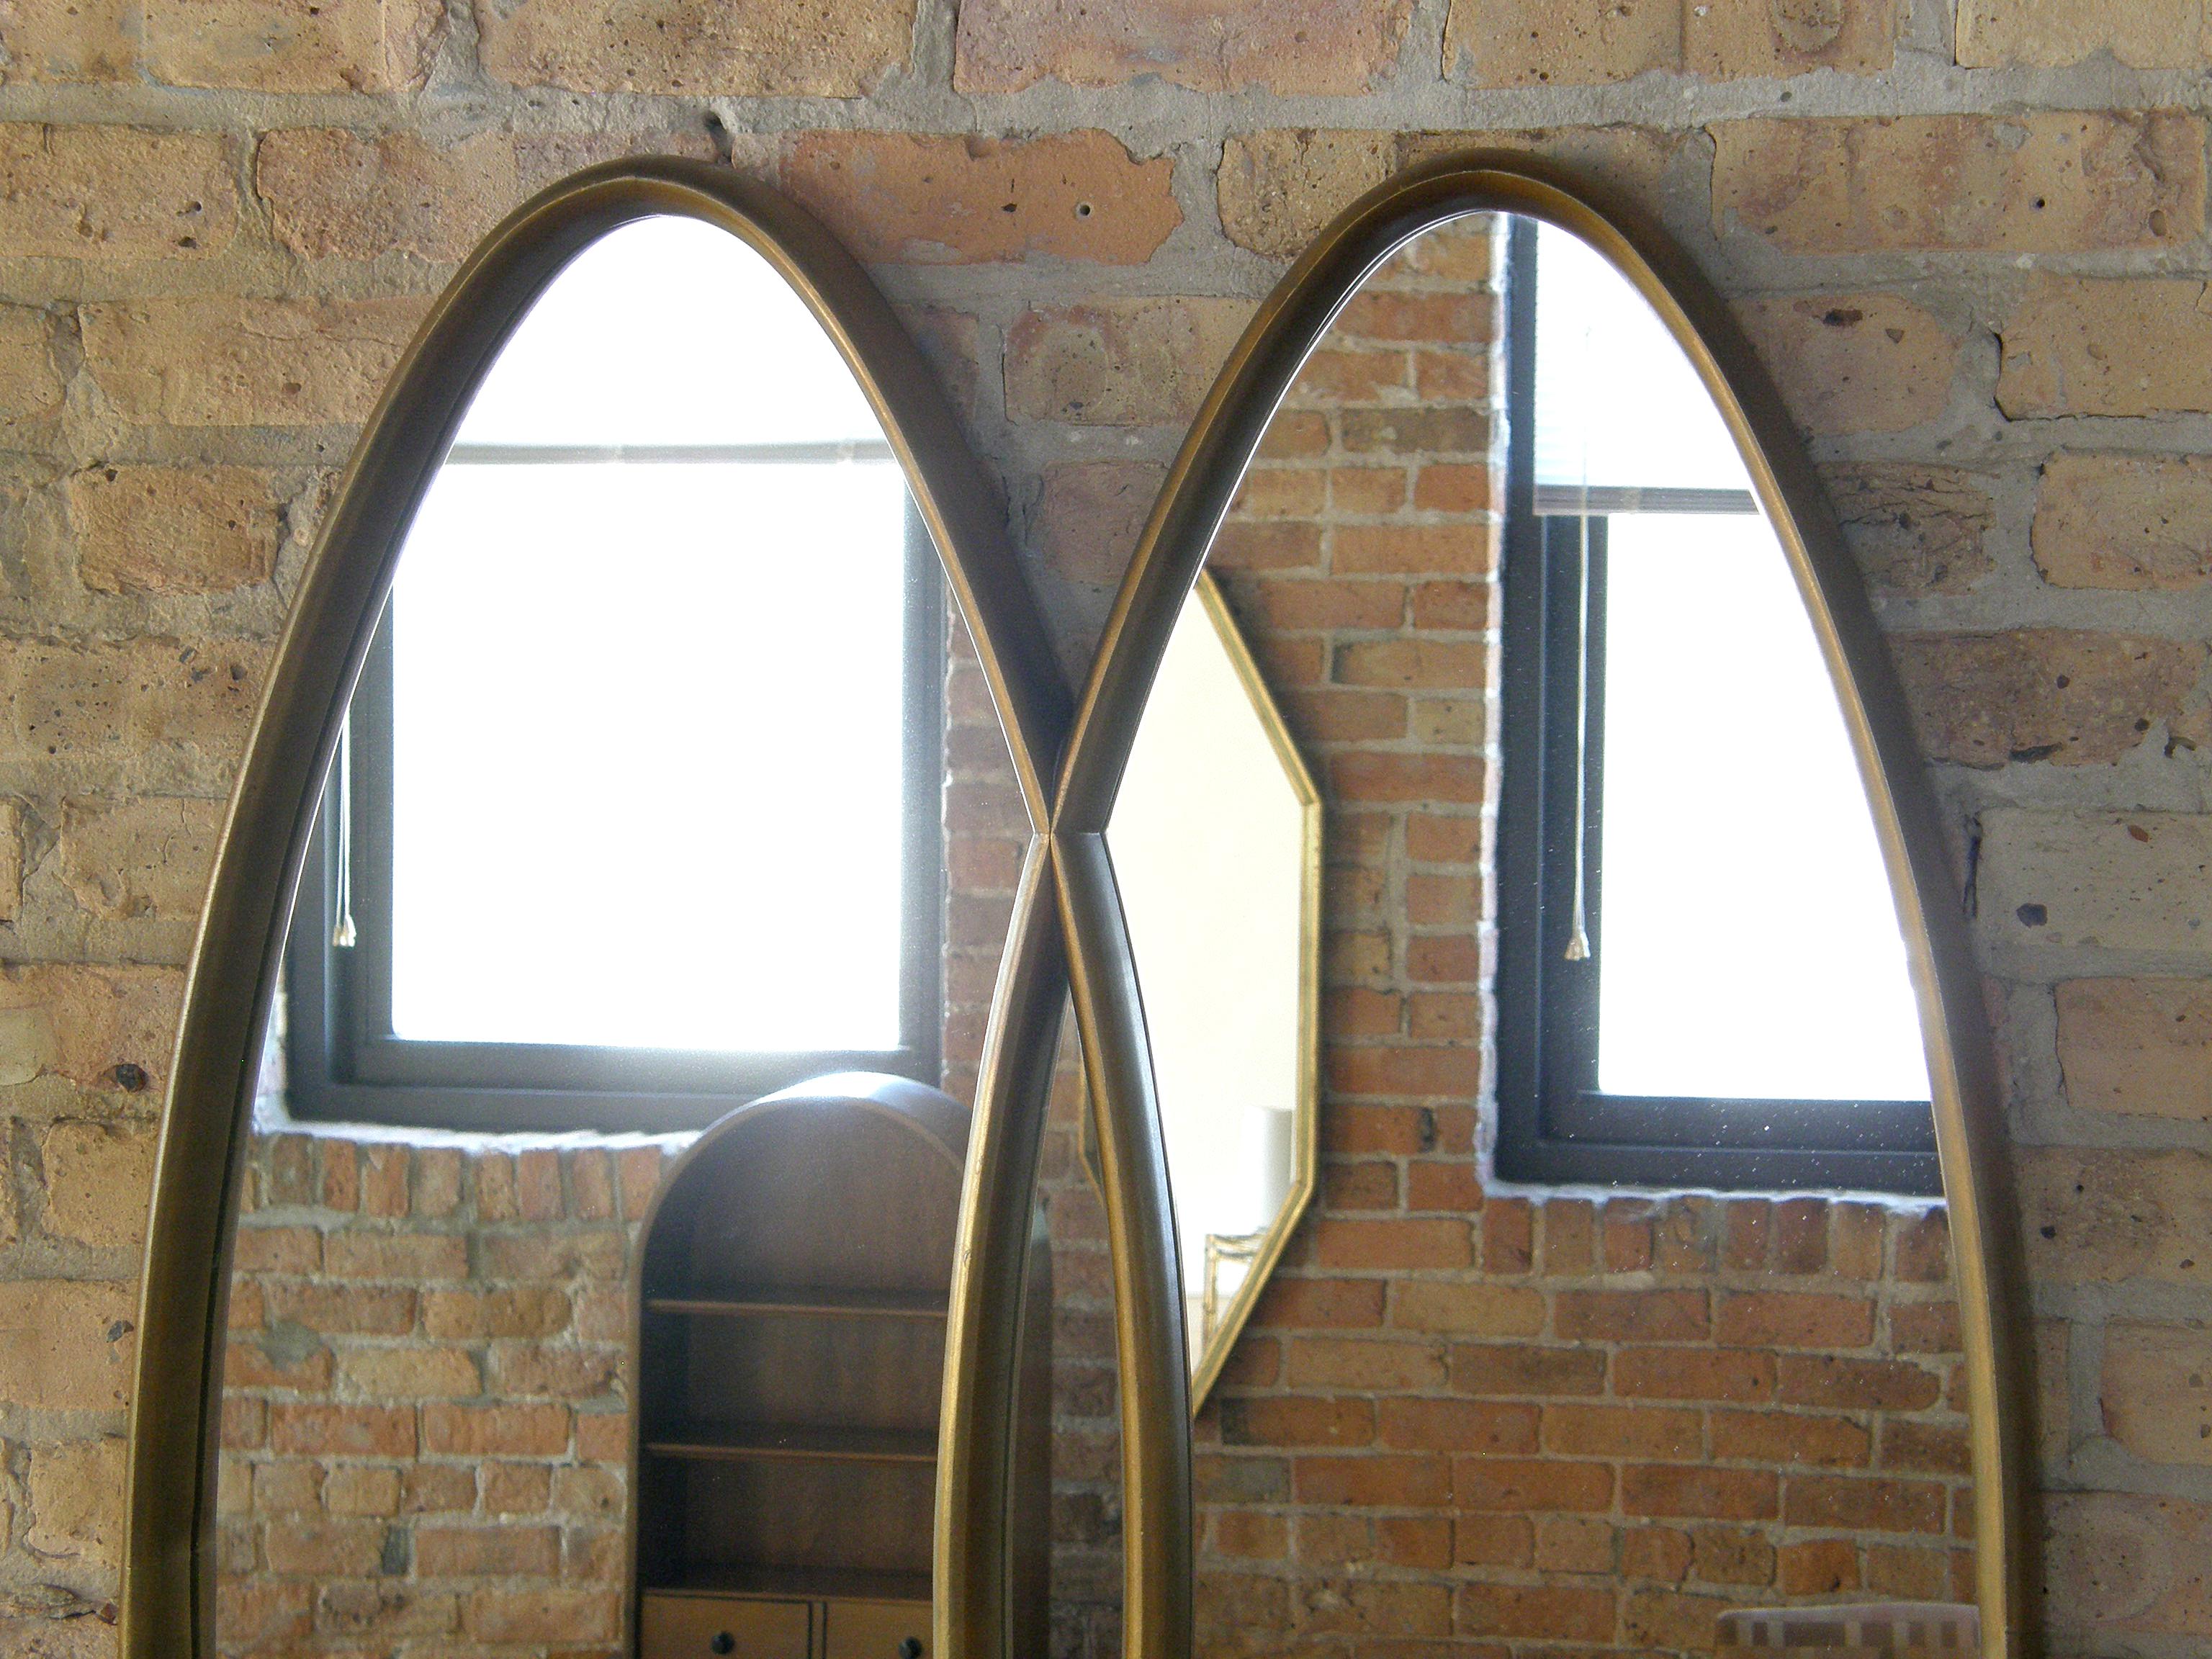 Dieser elegante Wandspiegel aus vergoldetem Holz hat ein Design aus zwei ineinandergreifenden Ovalen. Die Rahmen sind tief, mit einer raffinierten Rundung des Profils. 

 